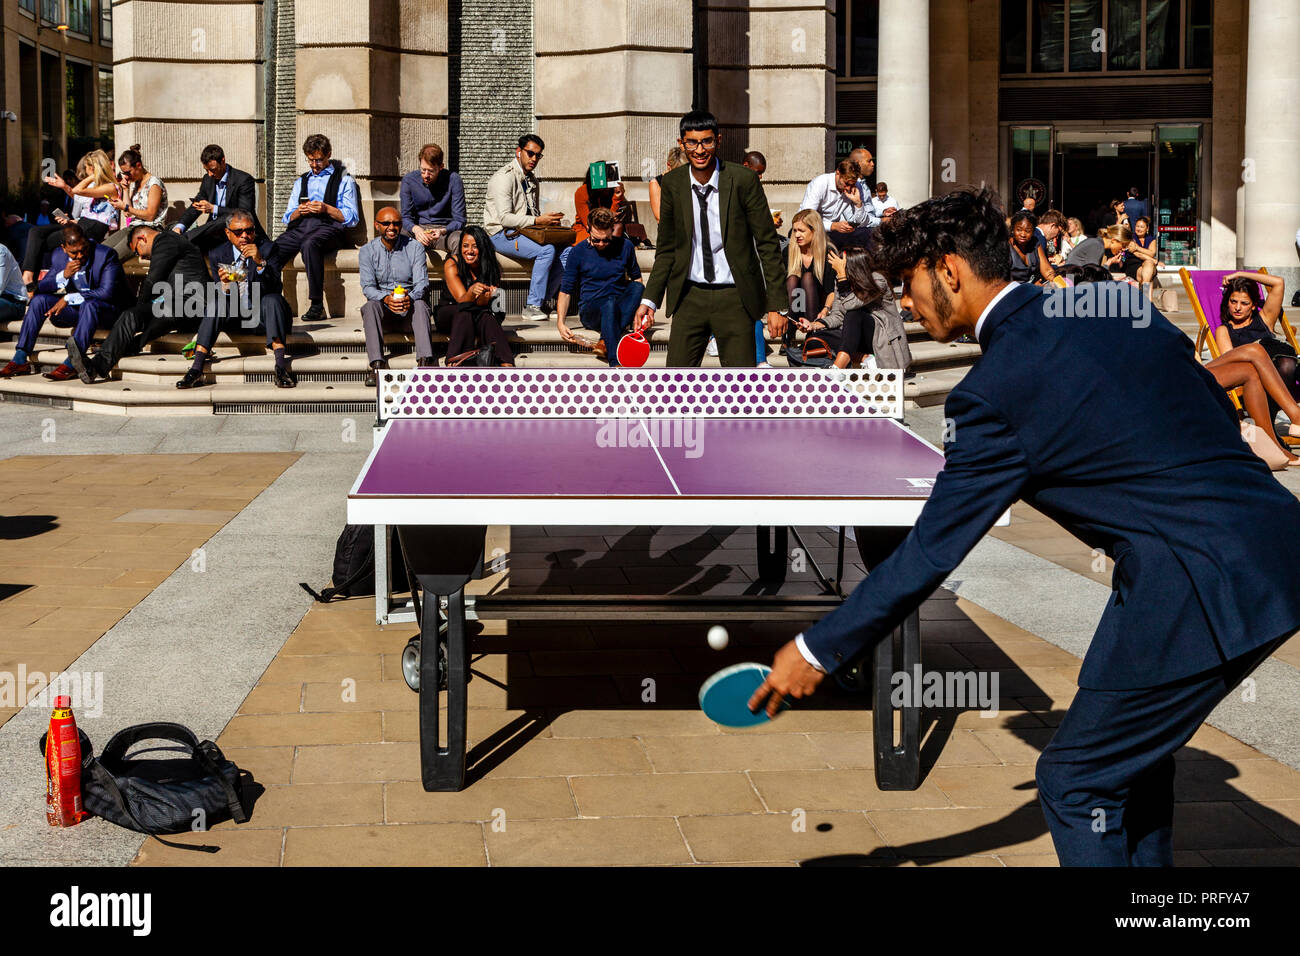 Ufficio lavoratori giocando a ping-pong (Ping Pong) durante la loro ora di pranzo, Paternoster square, London, Regno Unito Foto Stock